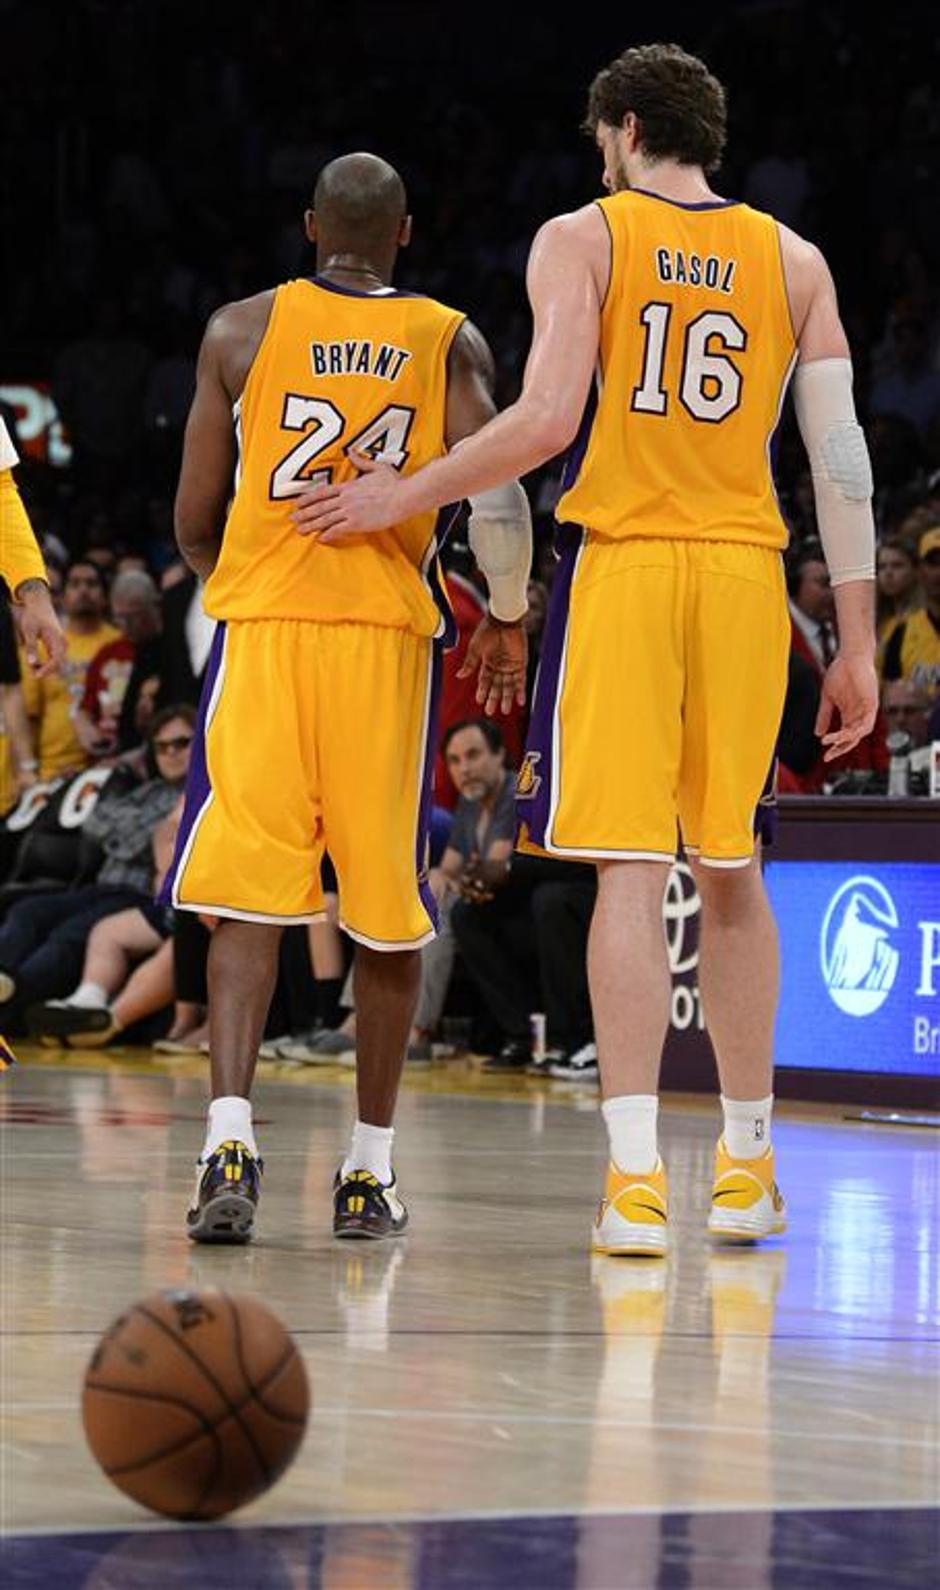 Bryant Gasol Los Angeles Lakers Golden State Warriors NBA košarka poškodba | Avtor: EPA